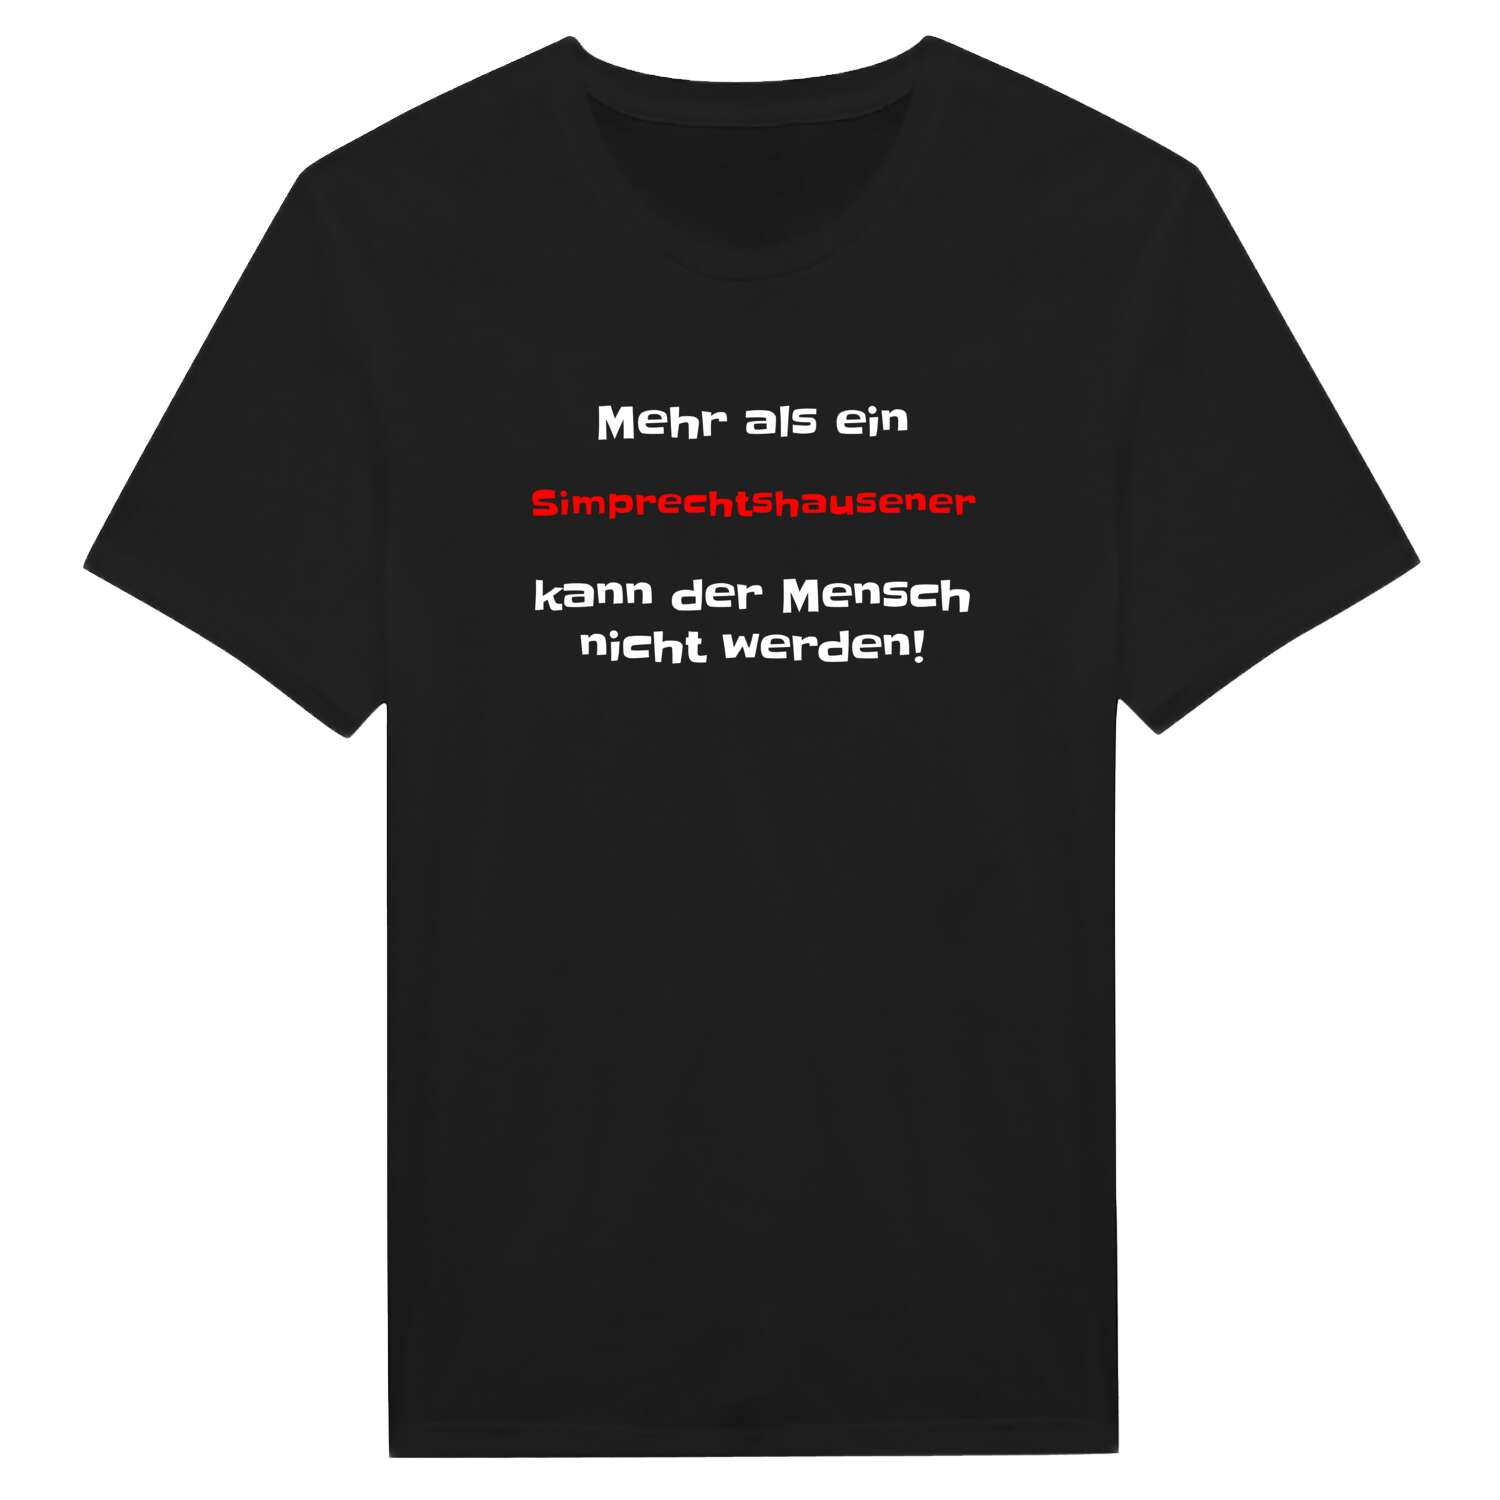 Simprechtshausen T-Shirt »Mehr als ein«